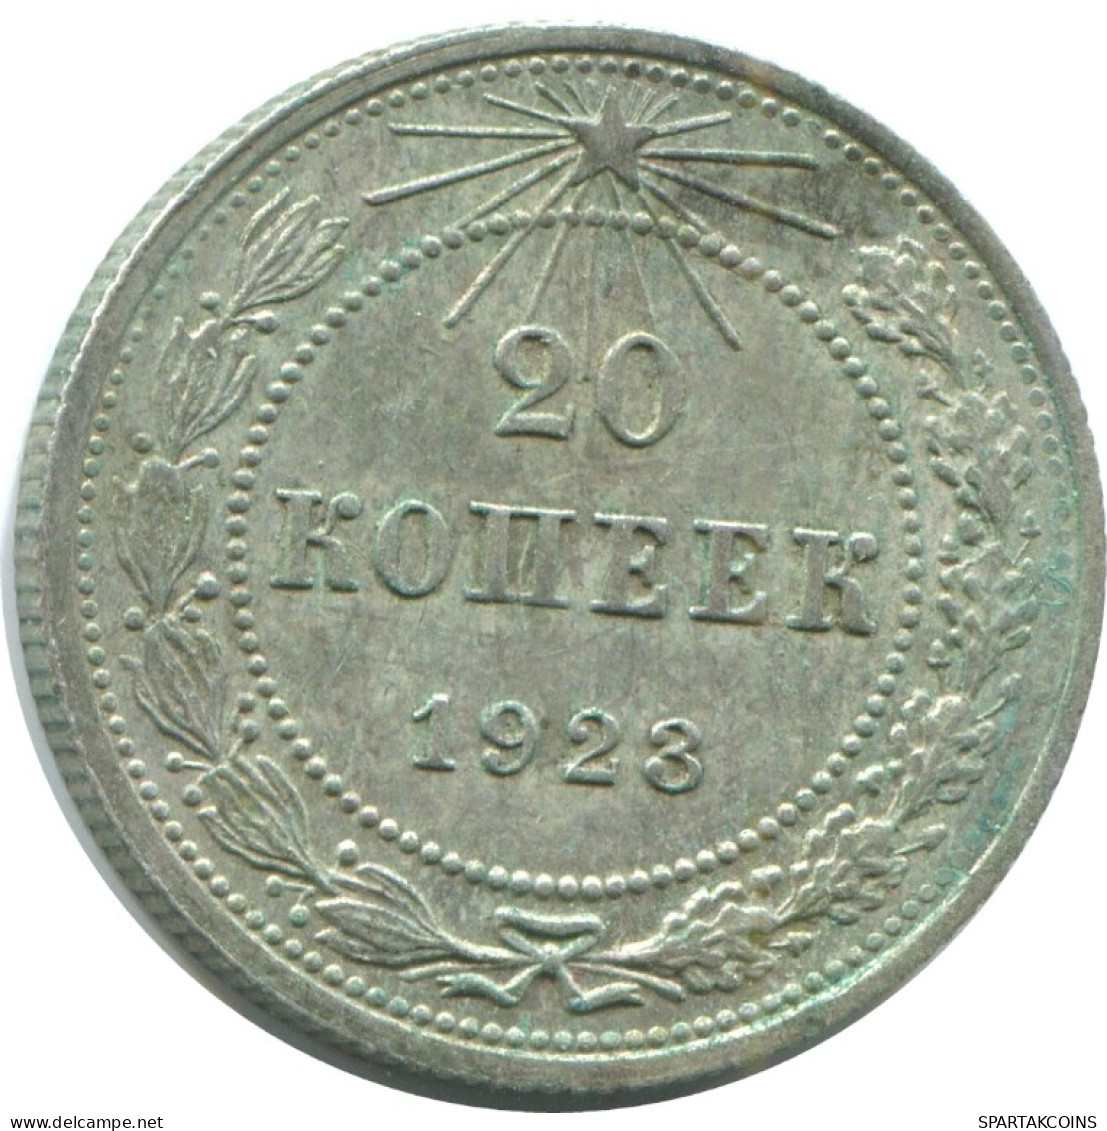 20 KOPEKS 1923 RUSSLAND RUSSIA RSFSR SILBER Münze HIGH GRADE #AF587.4.D.A - Rusia